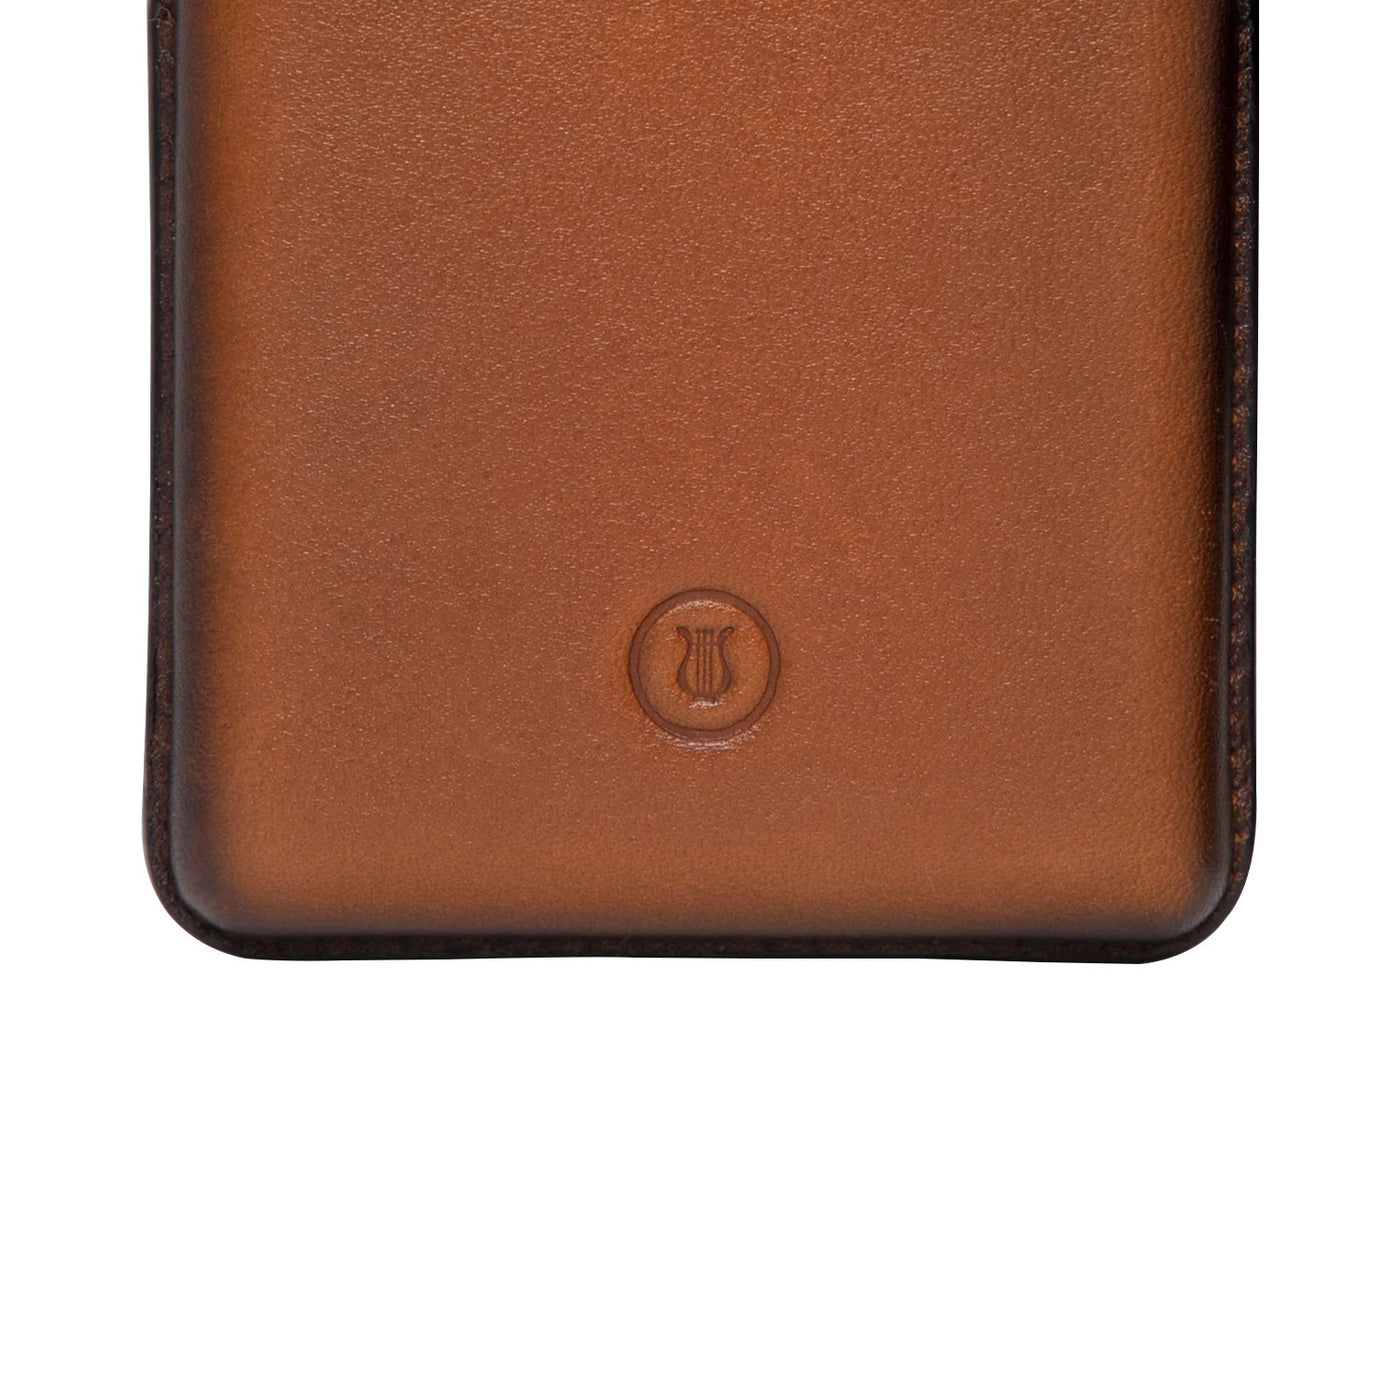 Lapis Bard Ducorium Moulded Card Case - Cognac 10